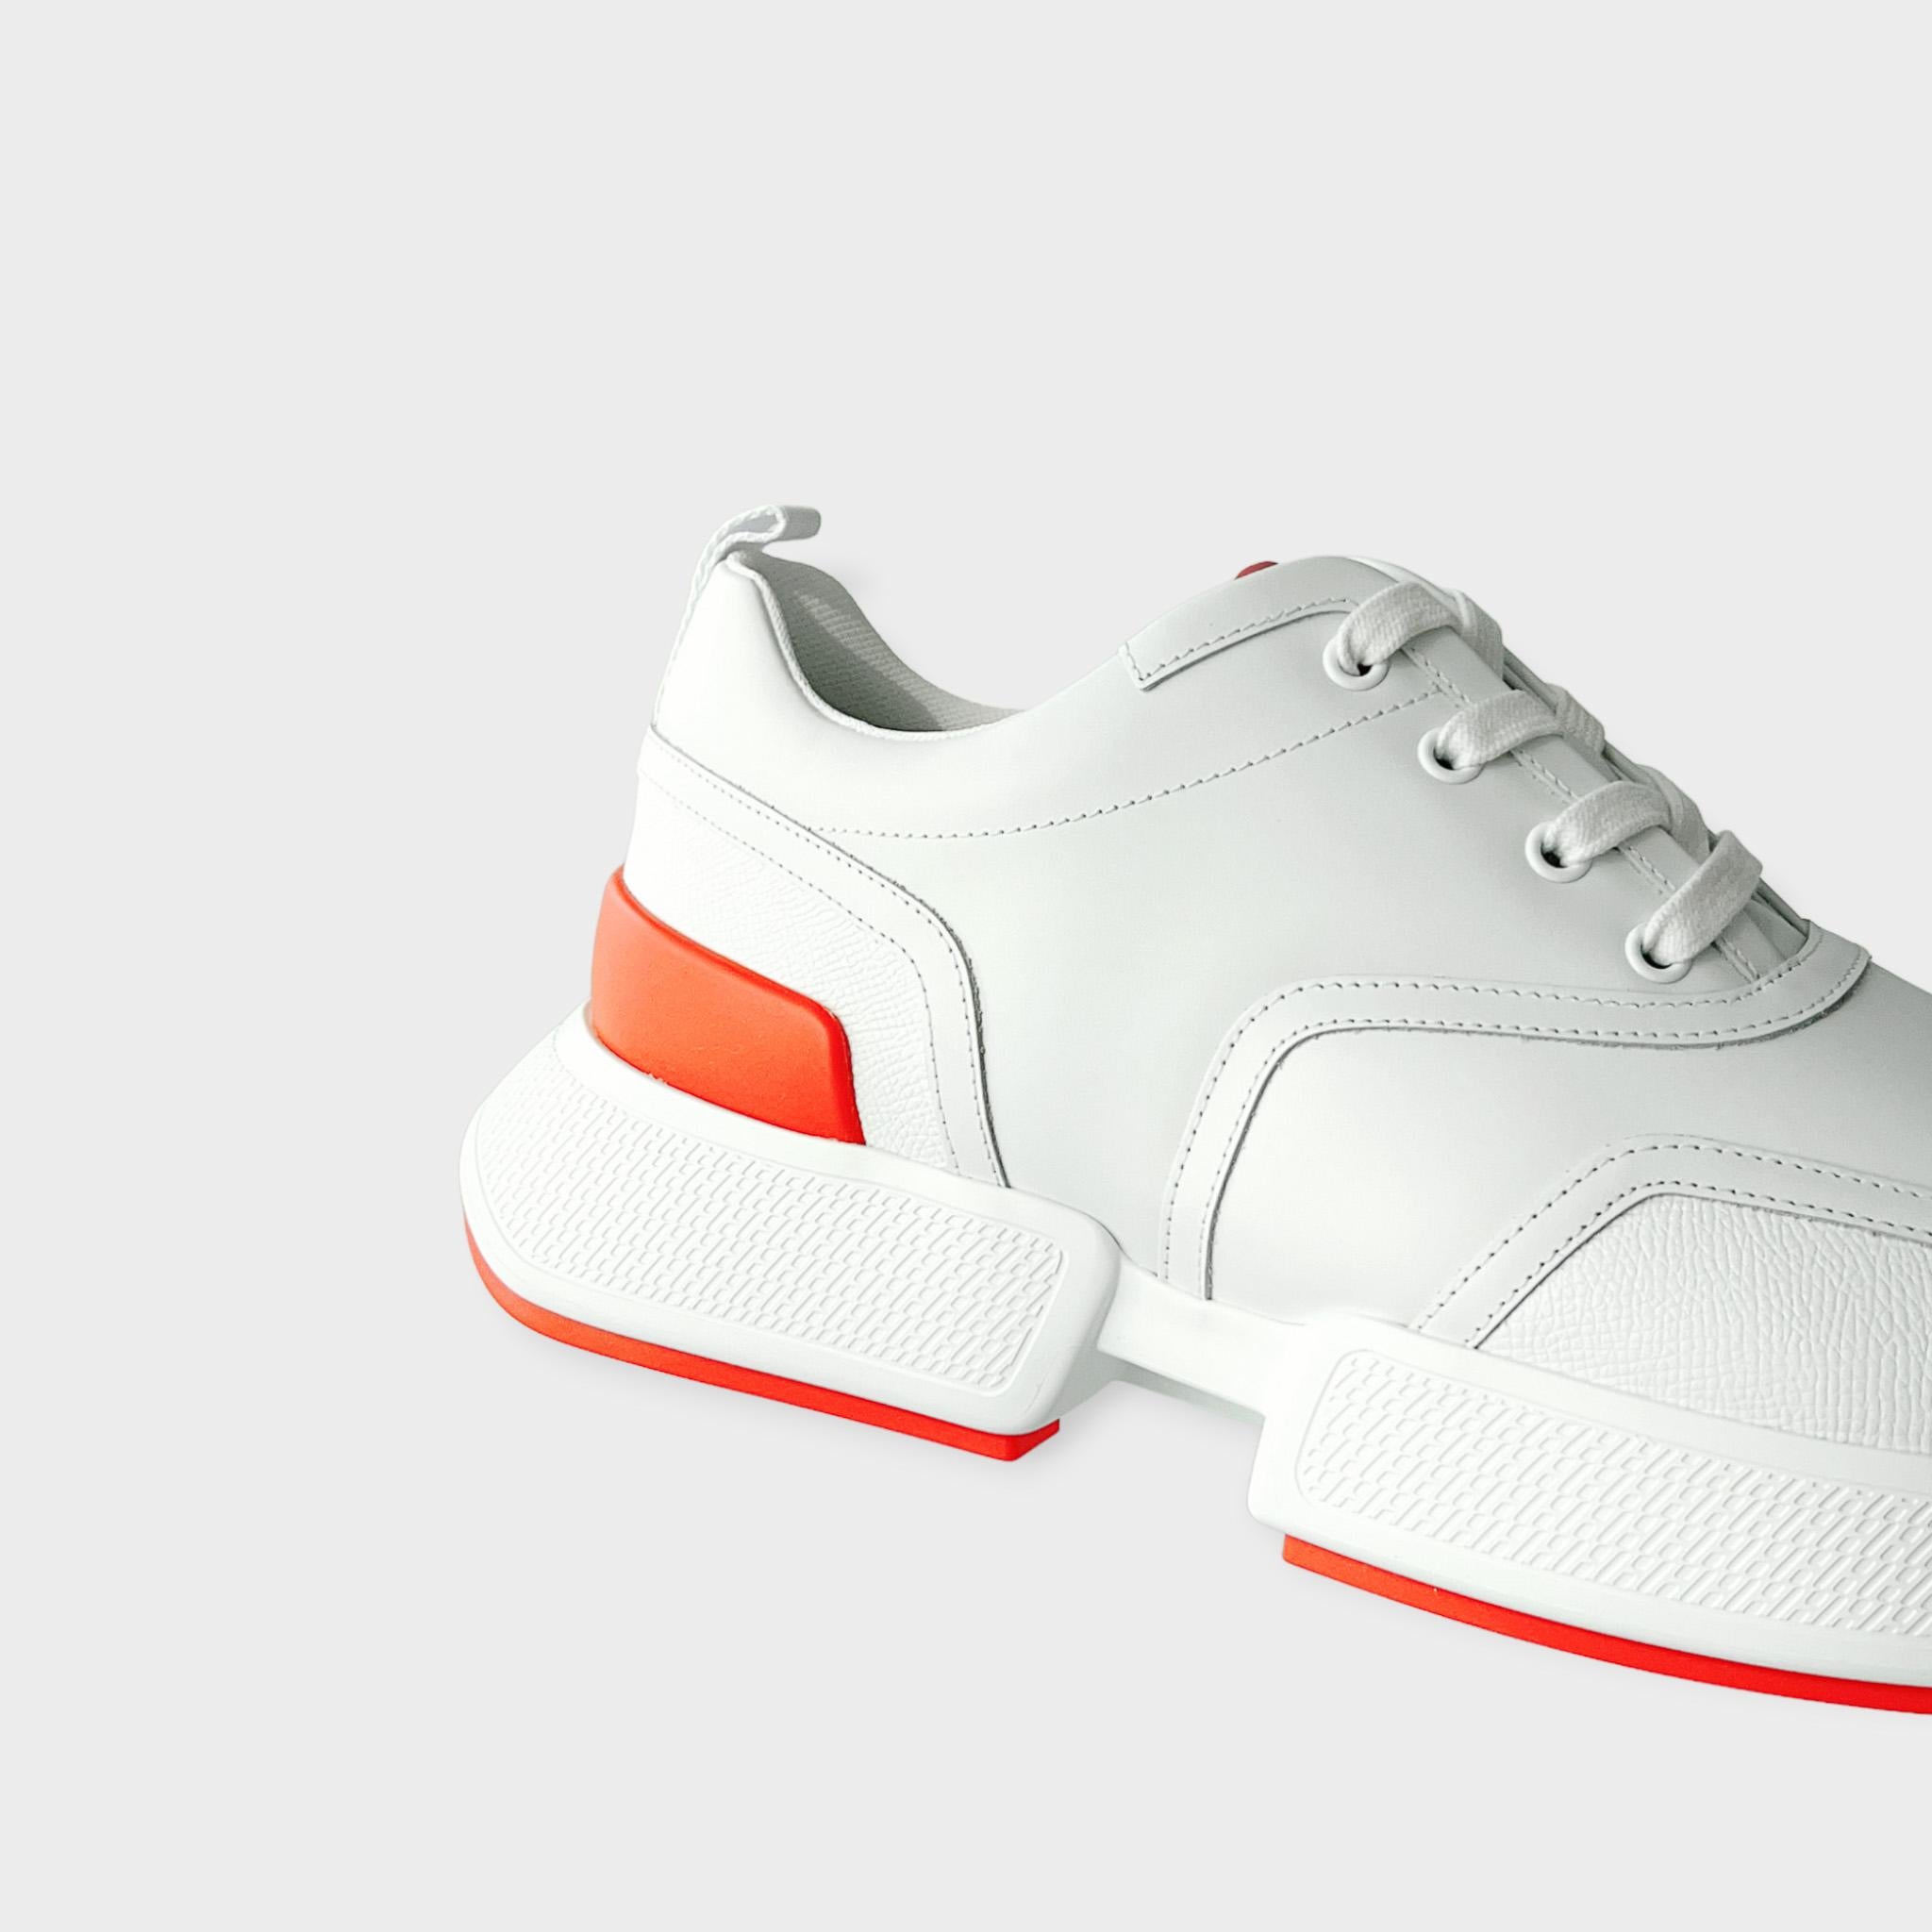 Nous avons une belle paire de baskets Hermès Giga pour homme en blanc avec une semelle orange. La Hermes Giga Sneaker est une nouveauté de la saison SS23 avec une semelle surdimensionnée pour créer un look plus jeune et plus moderne. 

Marque :